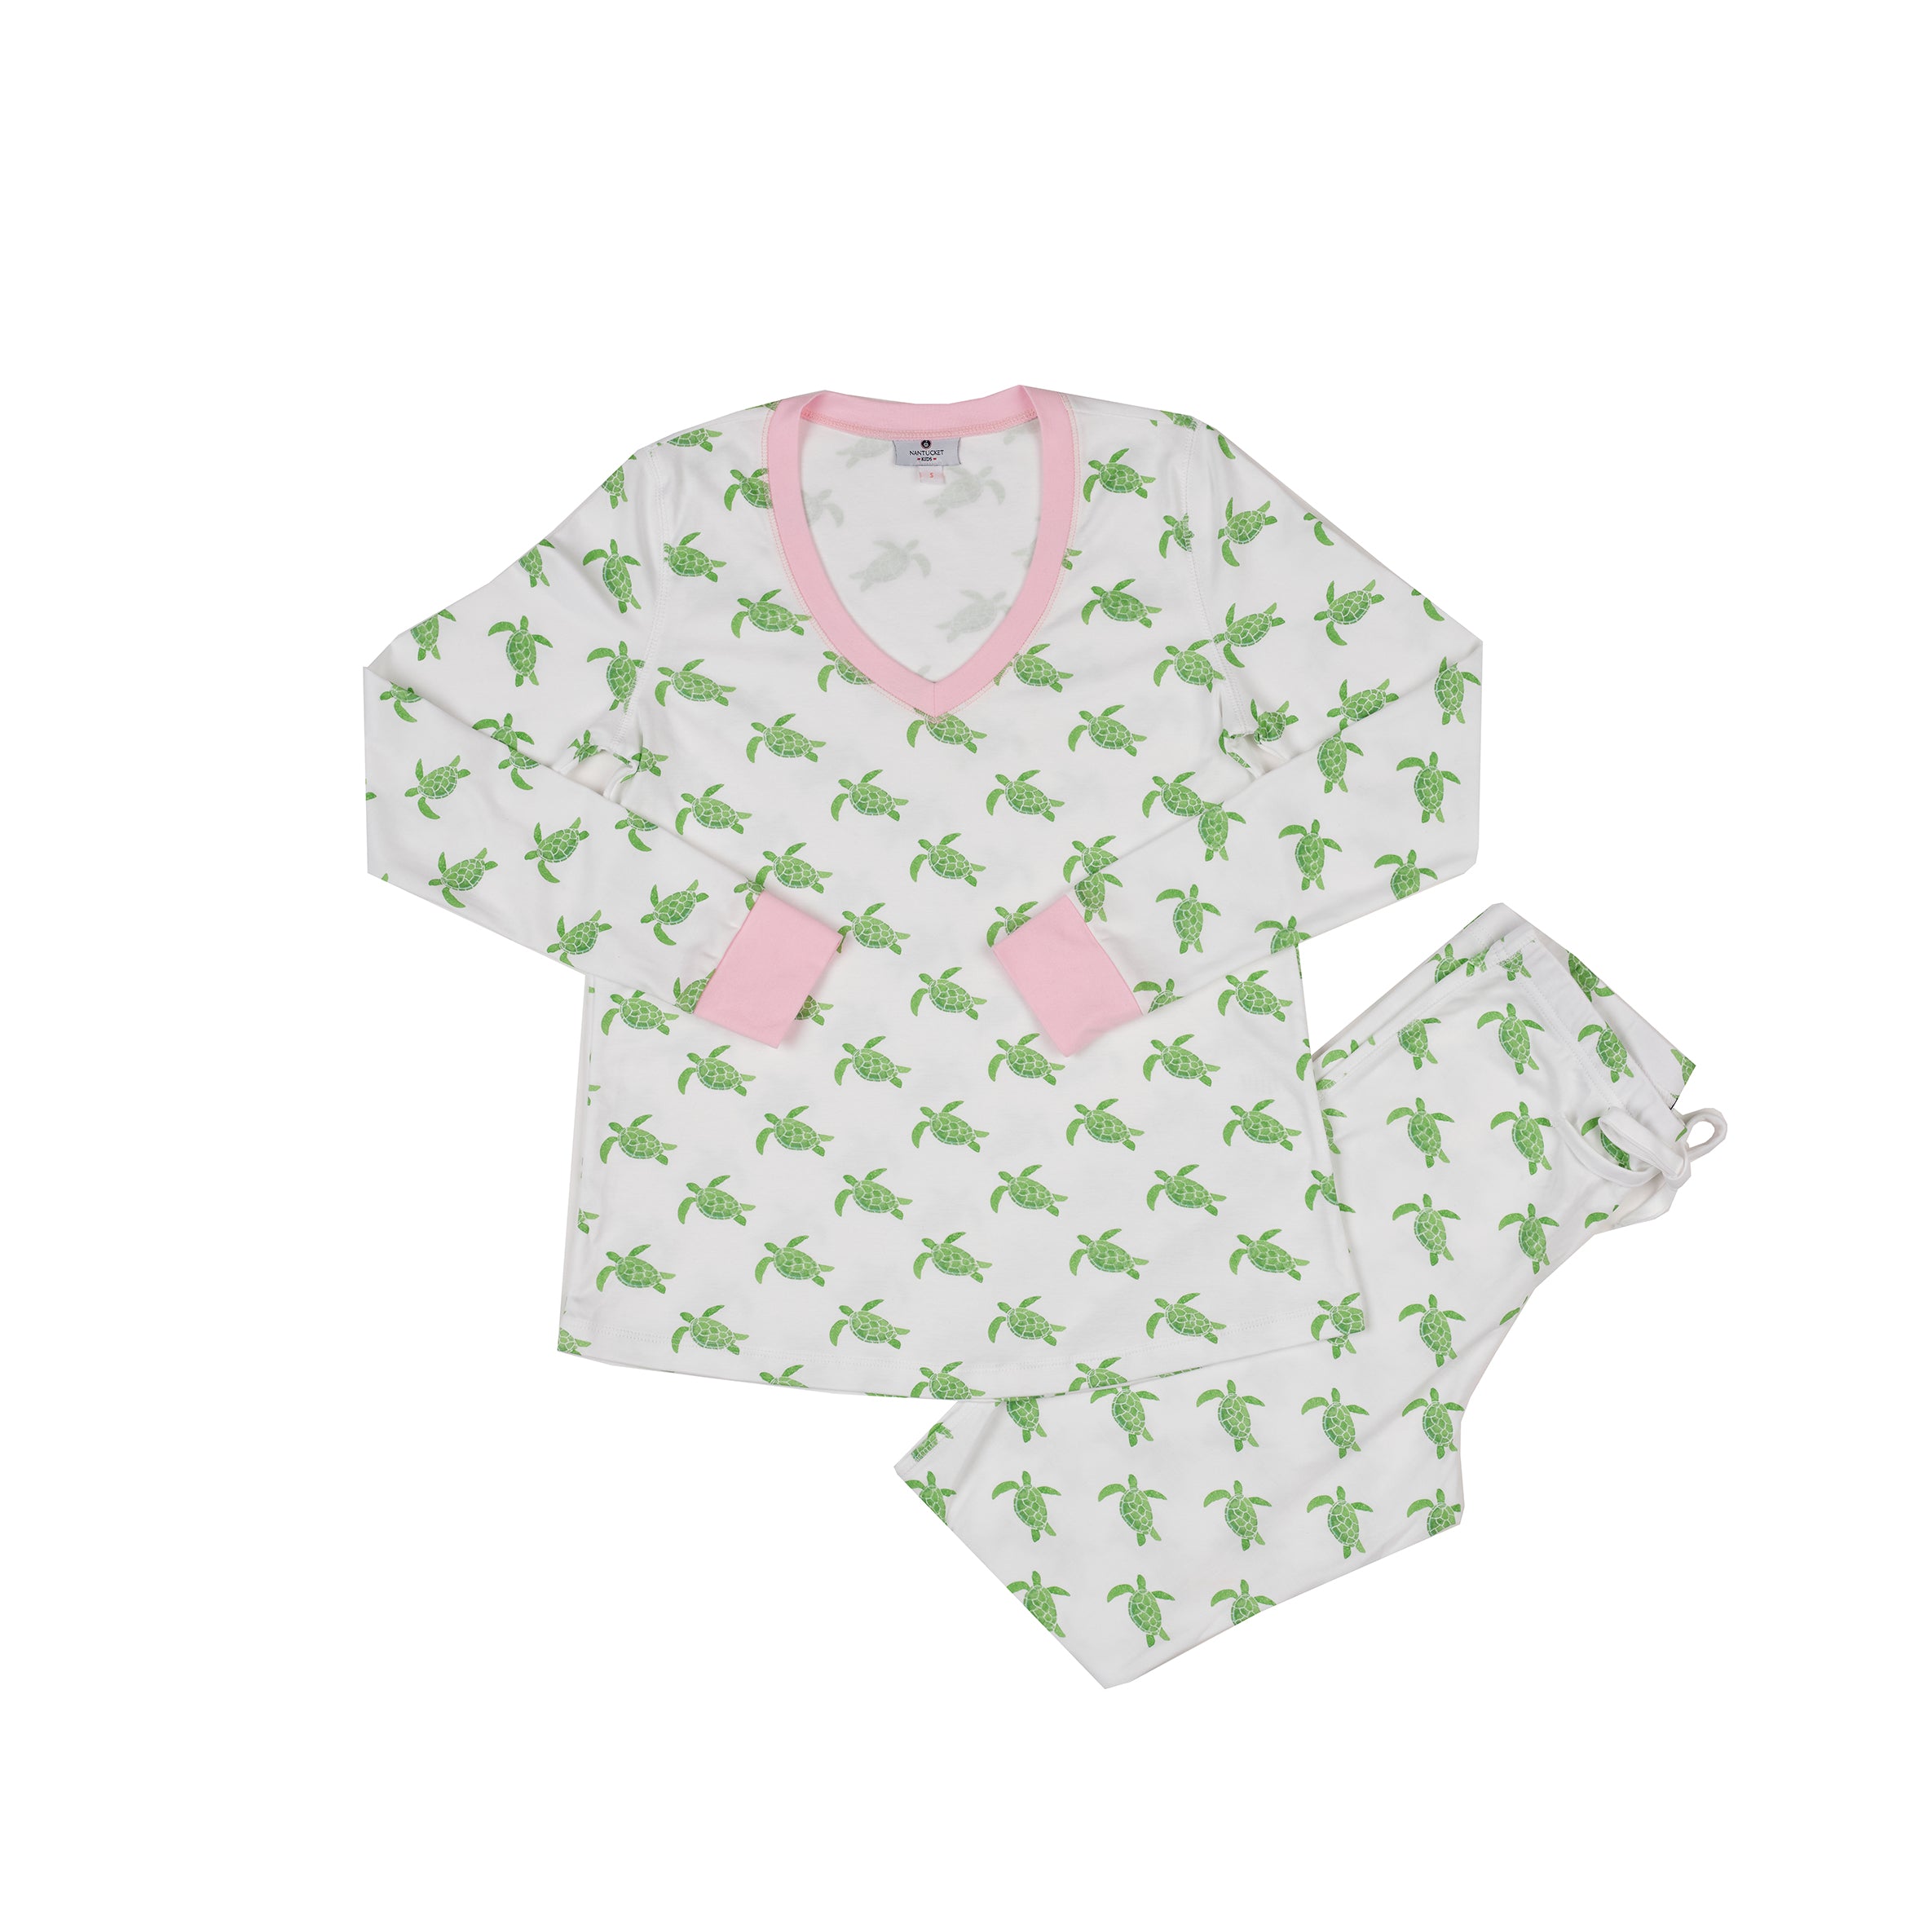 Yoycol Turtle Shell Kids Pajamas Set L